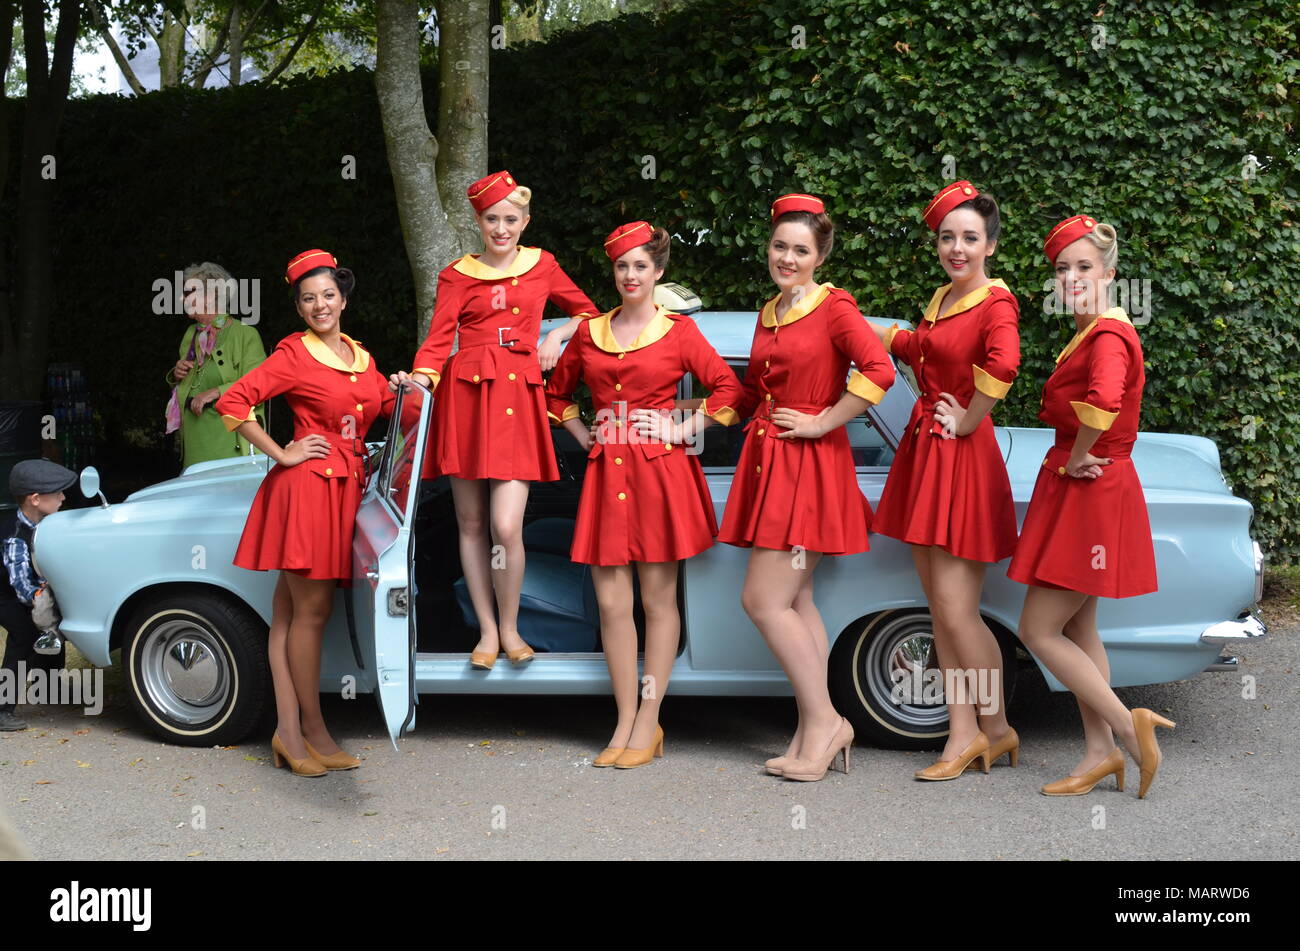 In taxi cab uniforms prenant part à l'événement 2014 Goodwood Revival organisé chaque année à la West Sussex circuit du moteur. Banque D'Images